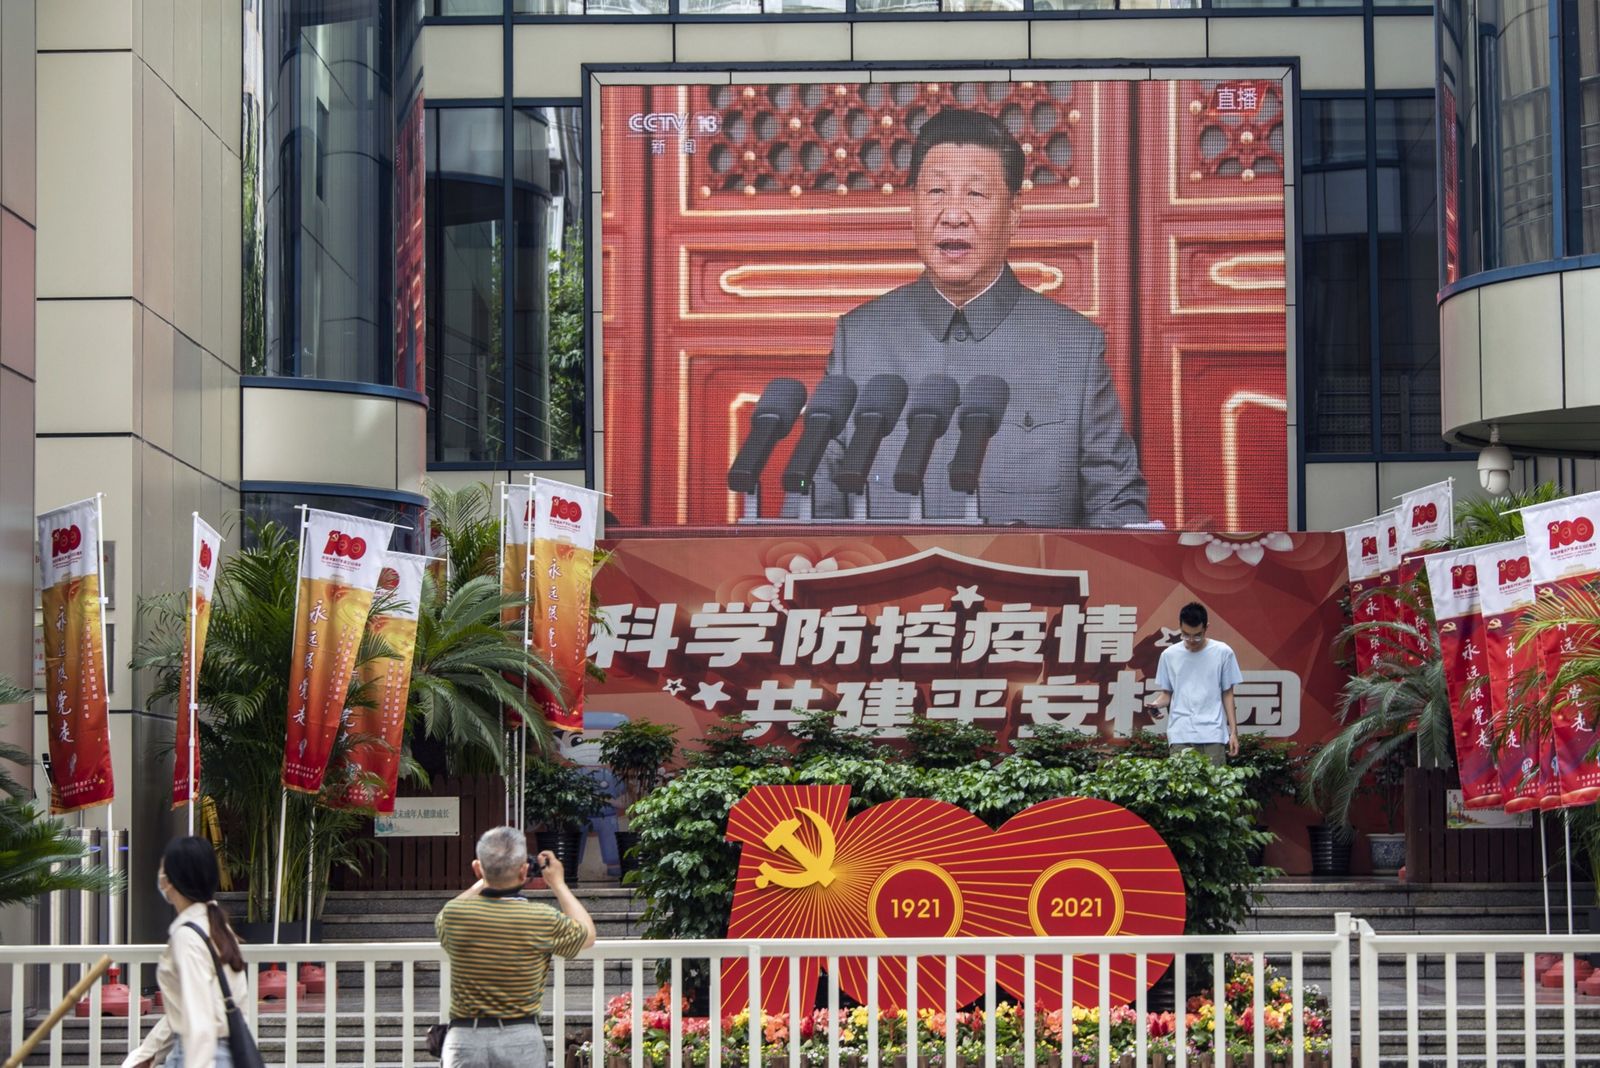 الرئيس الصيني شي جين بينغ يتحدث على شاشة في مدينة شنغهاي، في الذكرى المئوية لتأسيس الحزب الشيوعي - 1 يوليو 2021 - Bloomberg